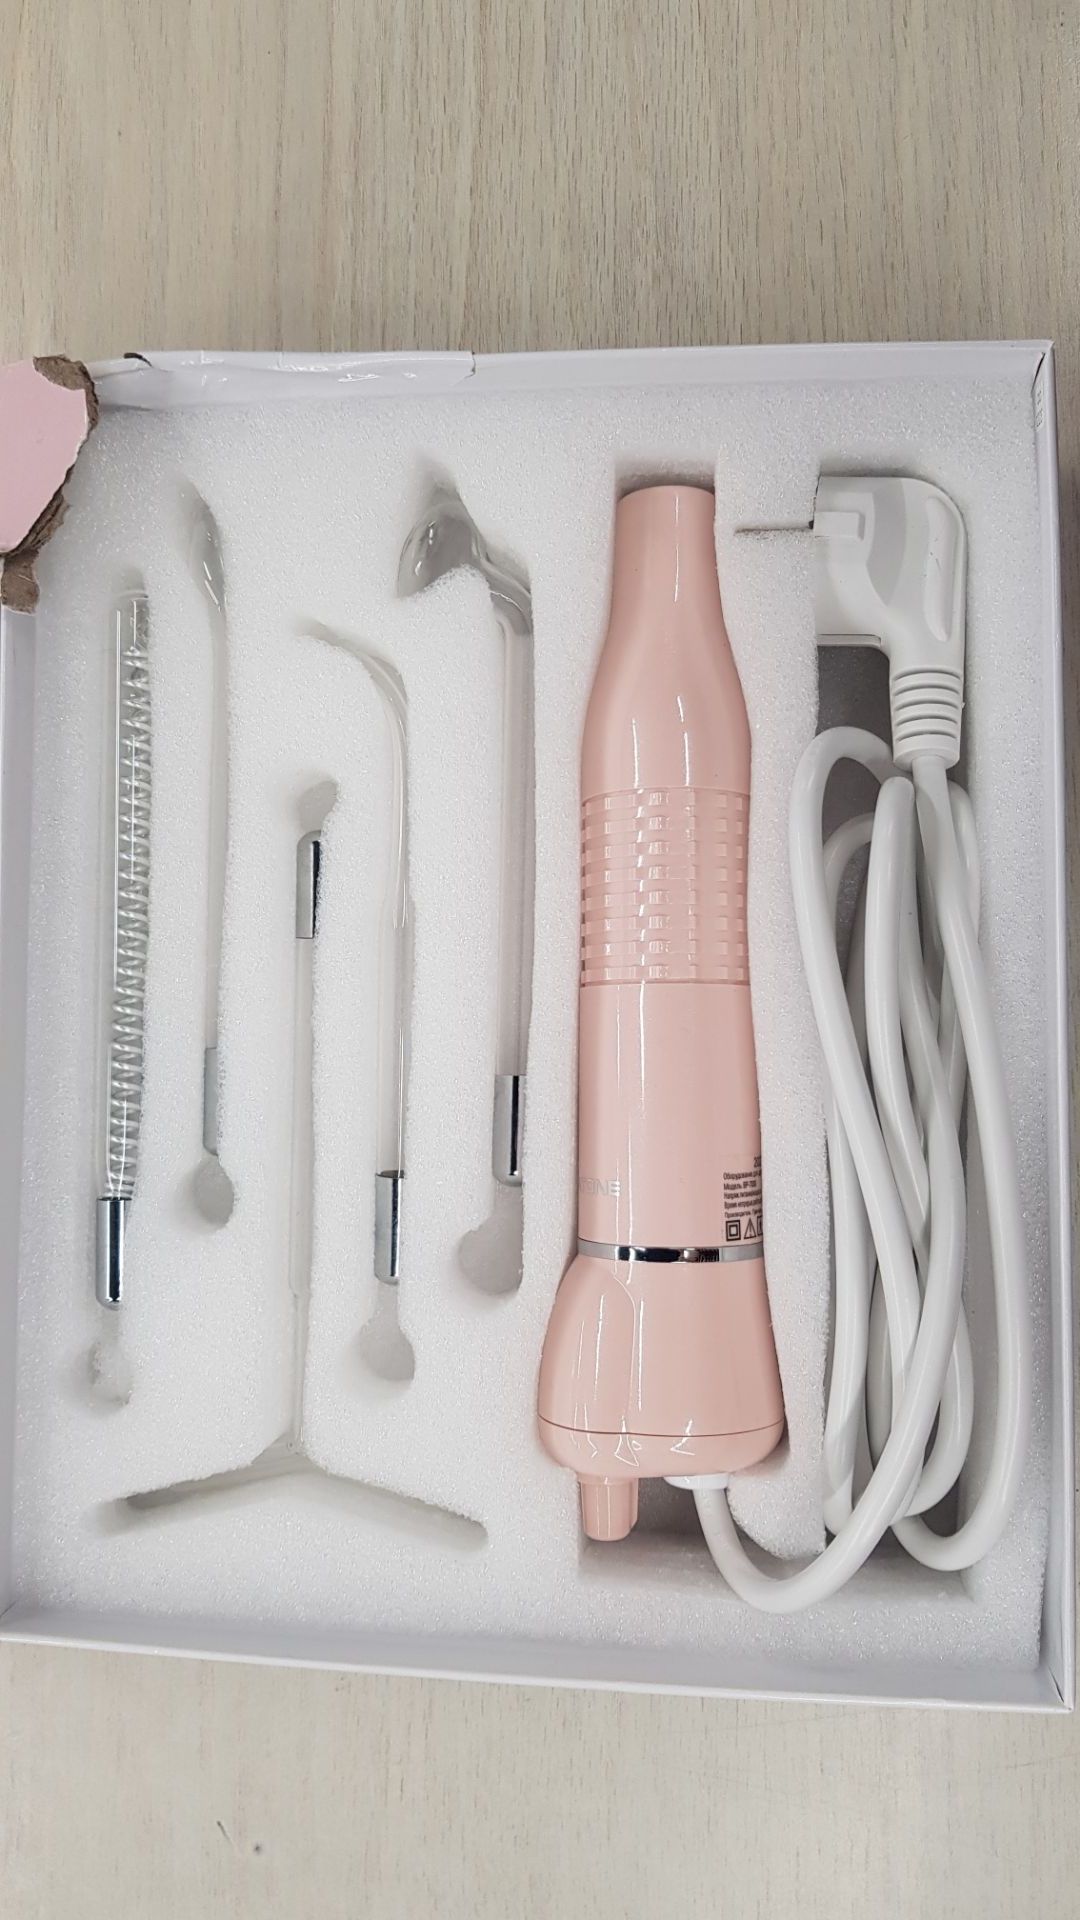 Оборудование для дарсонвальной терапии (5 насадок), розовый Gezatone BP-7000 хорошее состояние - фото 2